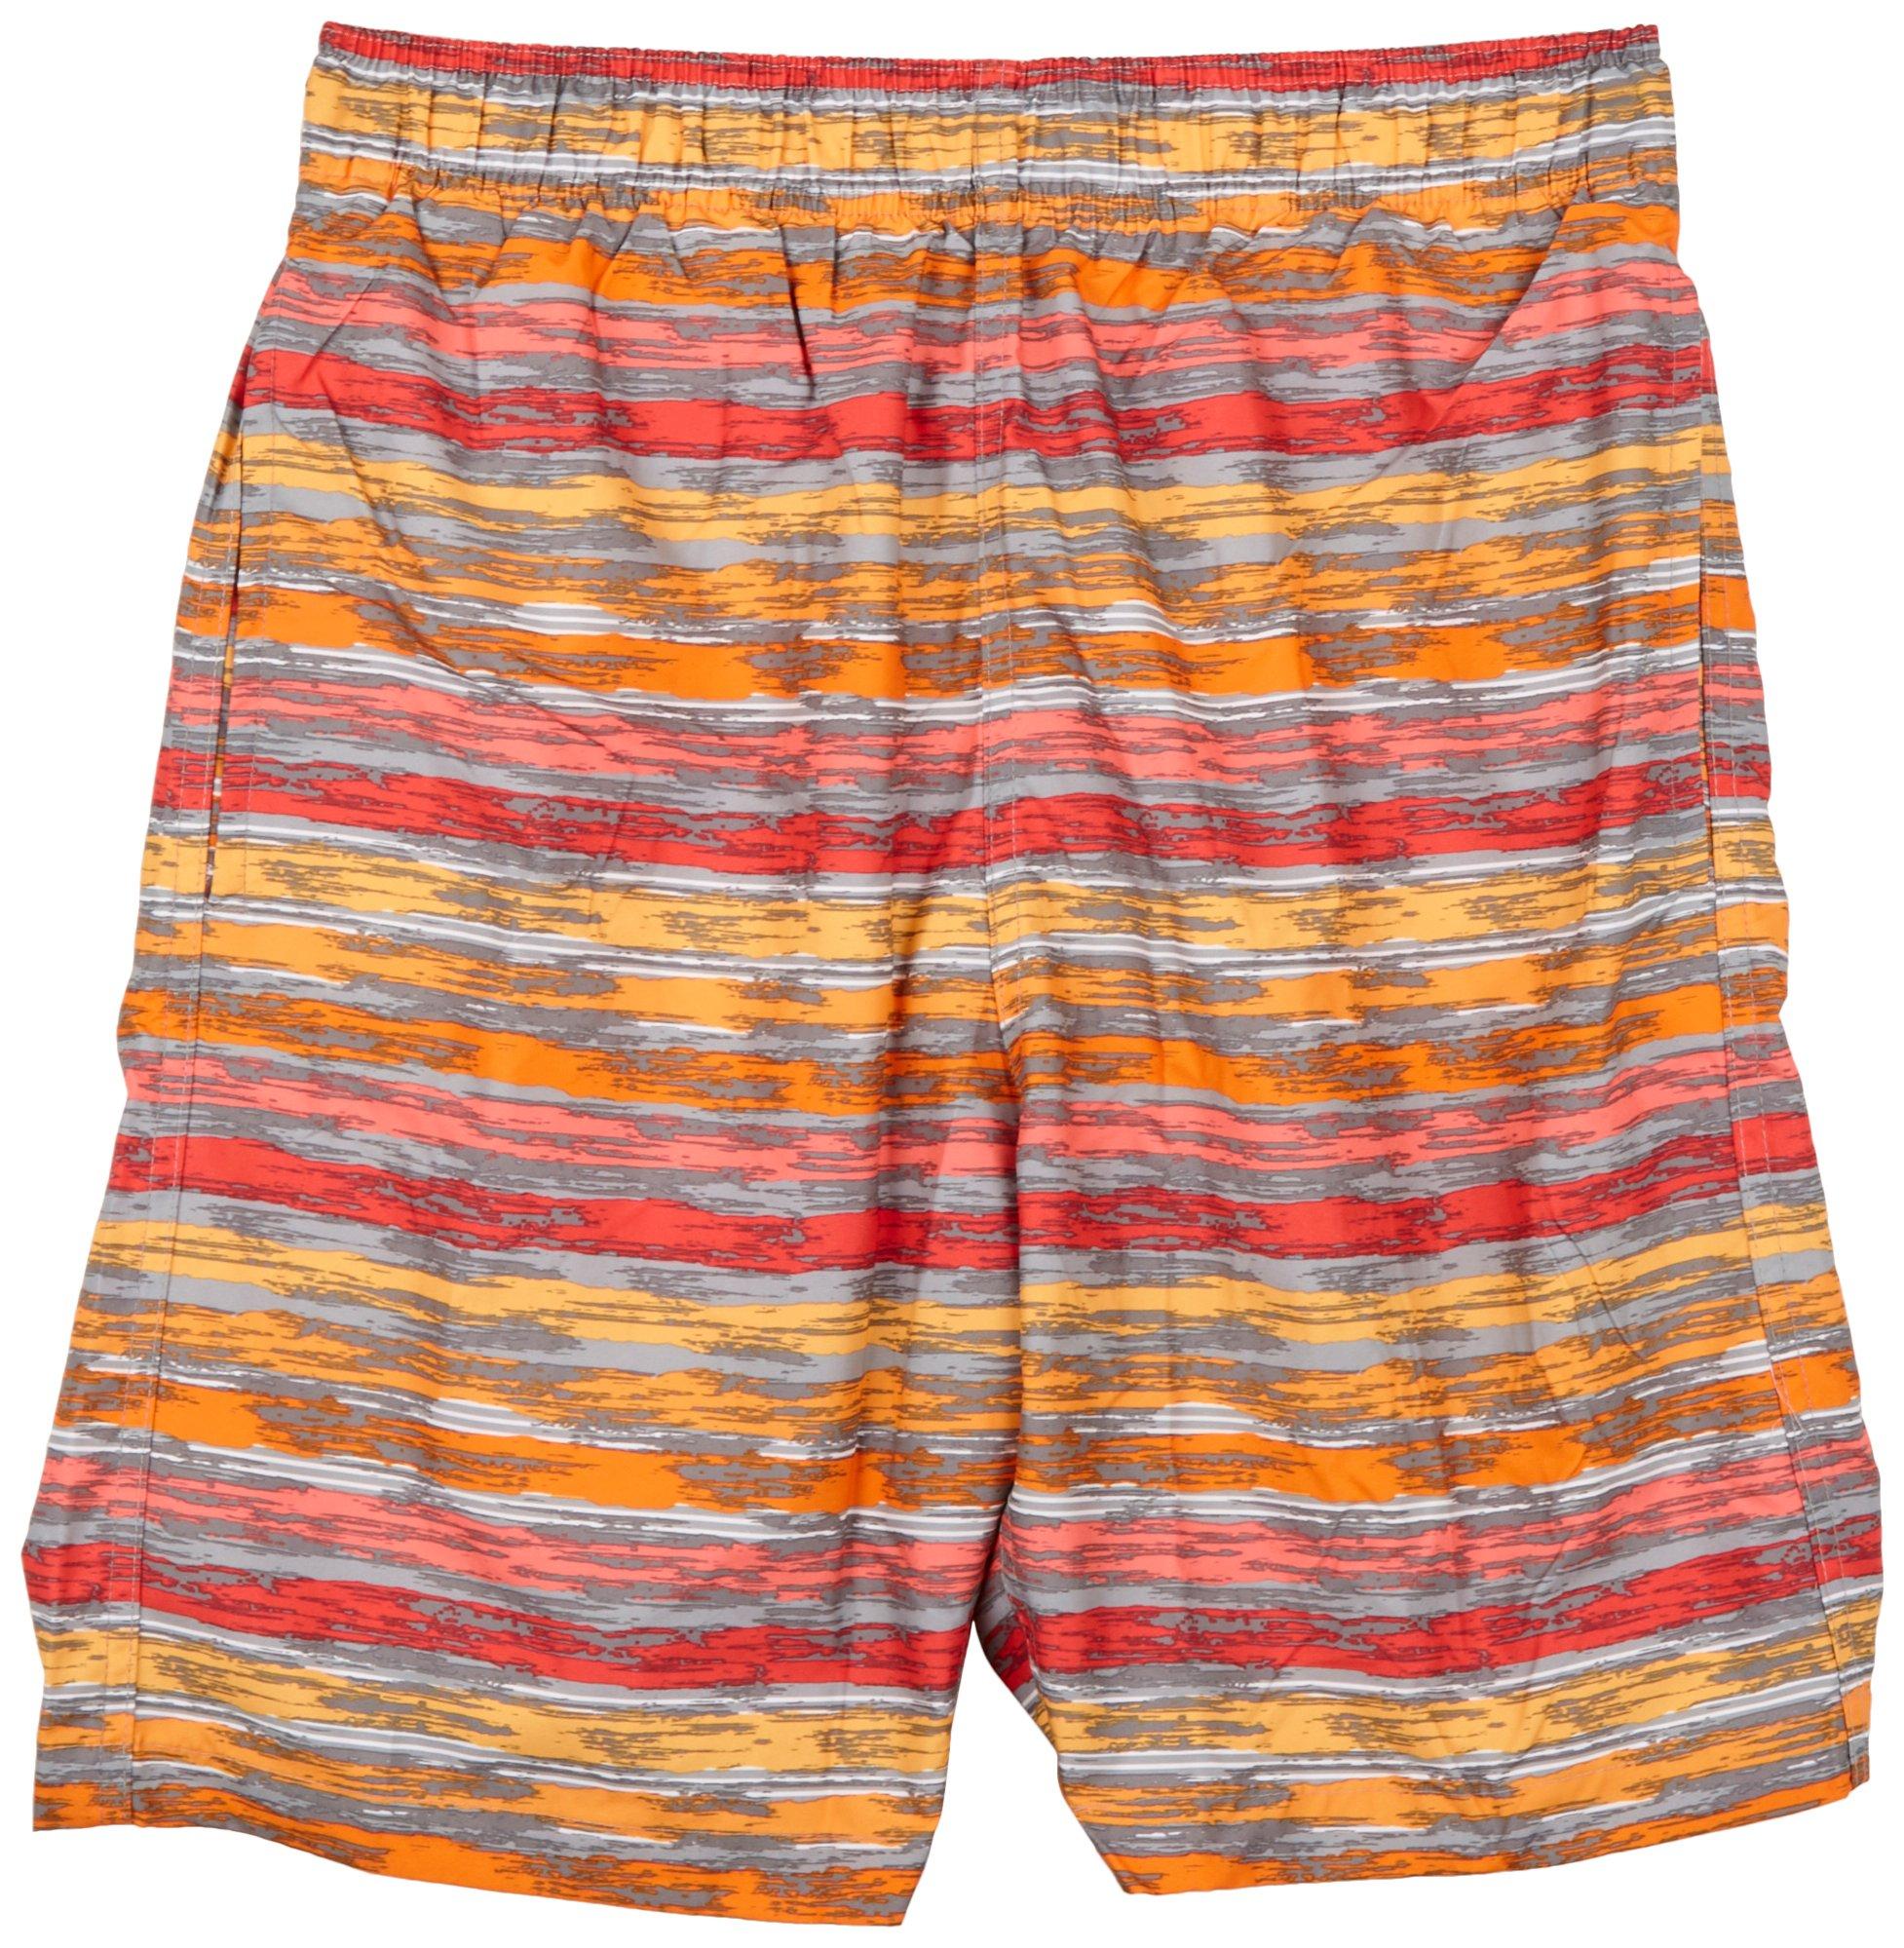 Laguna Mens 7.5 in. 2-in-1 Brief Brush Stroke Swim Shorts